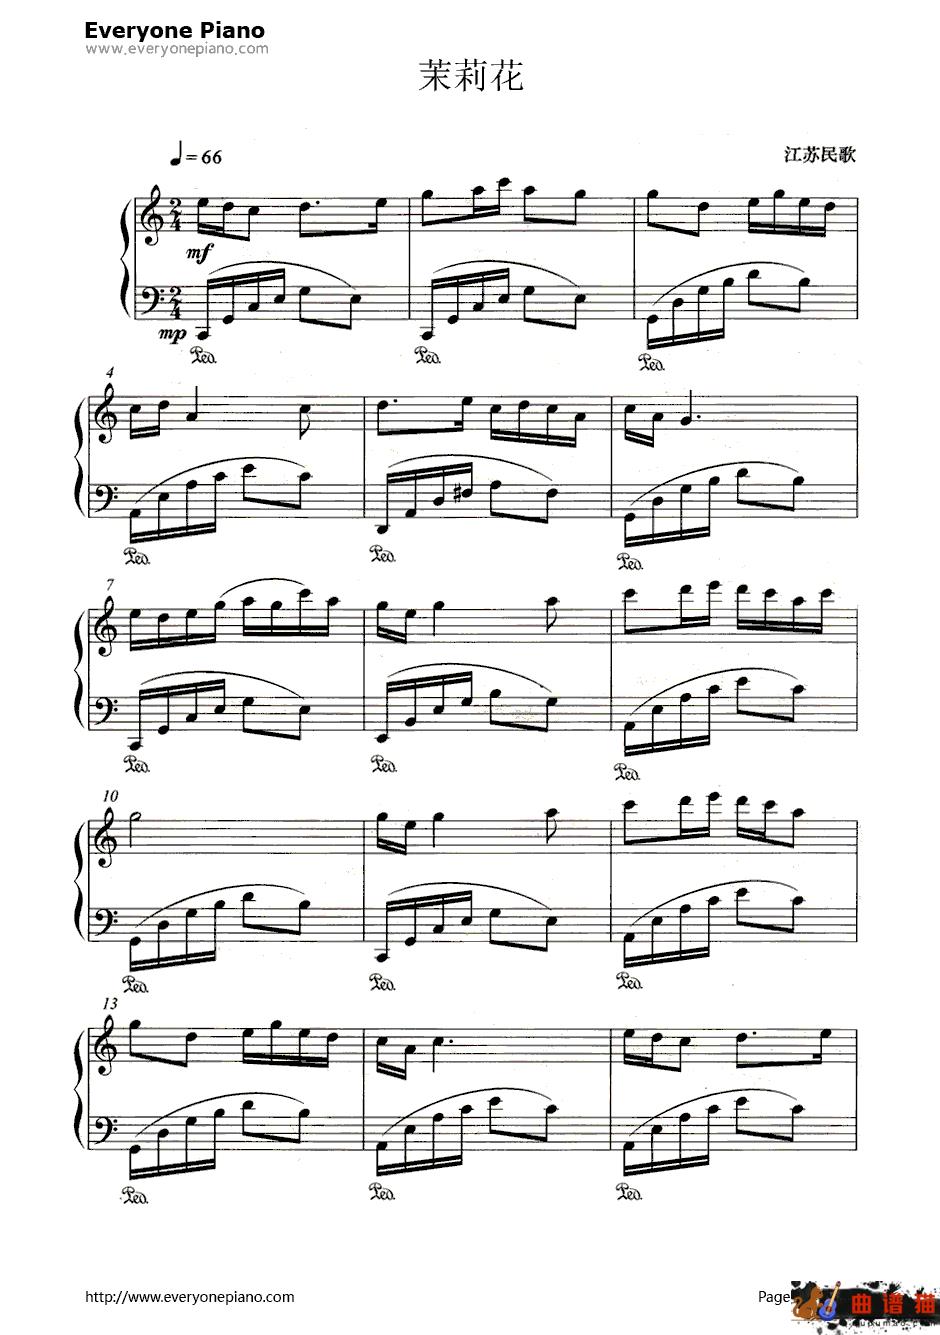 茉莉花五线谱、简谱对应版钢琴谱-何仿-茉莉花五线谱、简谱对应版